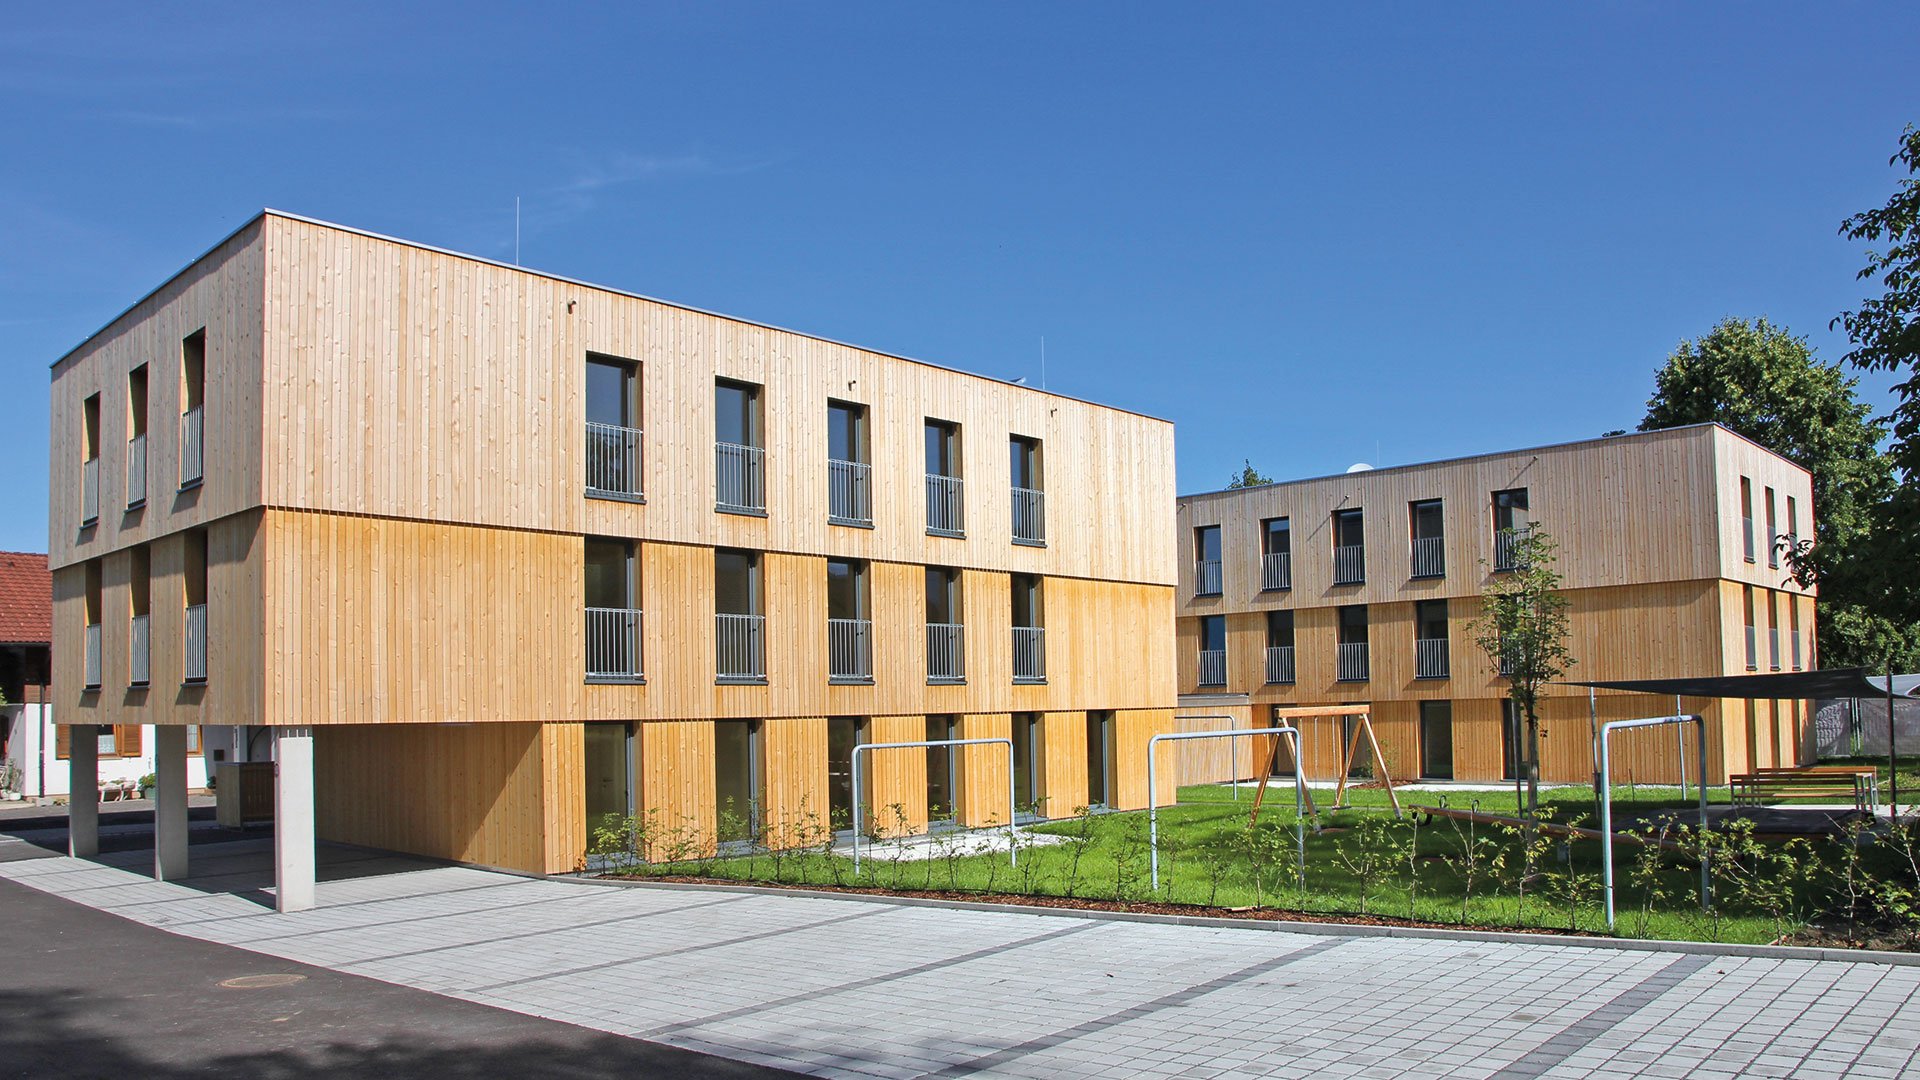 Der innovative Vorarlberger Rhomberg-Konzern baut auf Holz – bei seinen eigenen Gebäuden und als Export mittels des Cree-Systems, mit dem sogar Hochhäuser möglich werden. rhomberg.com